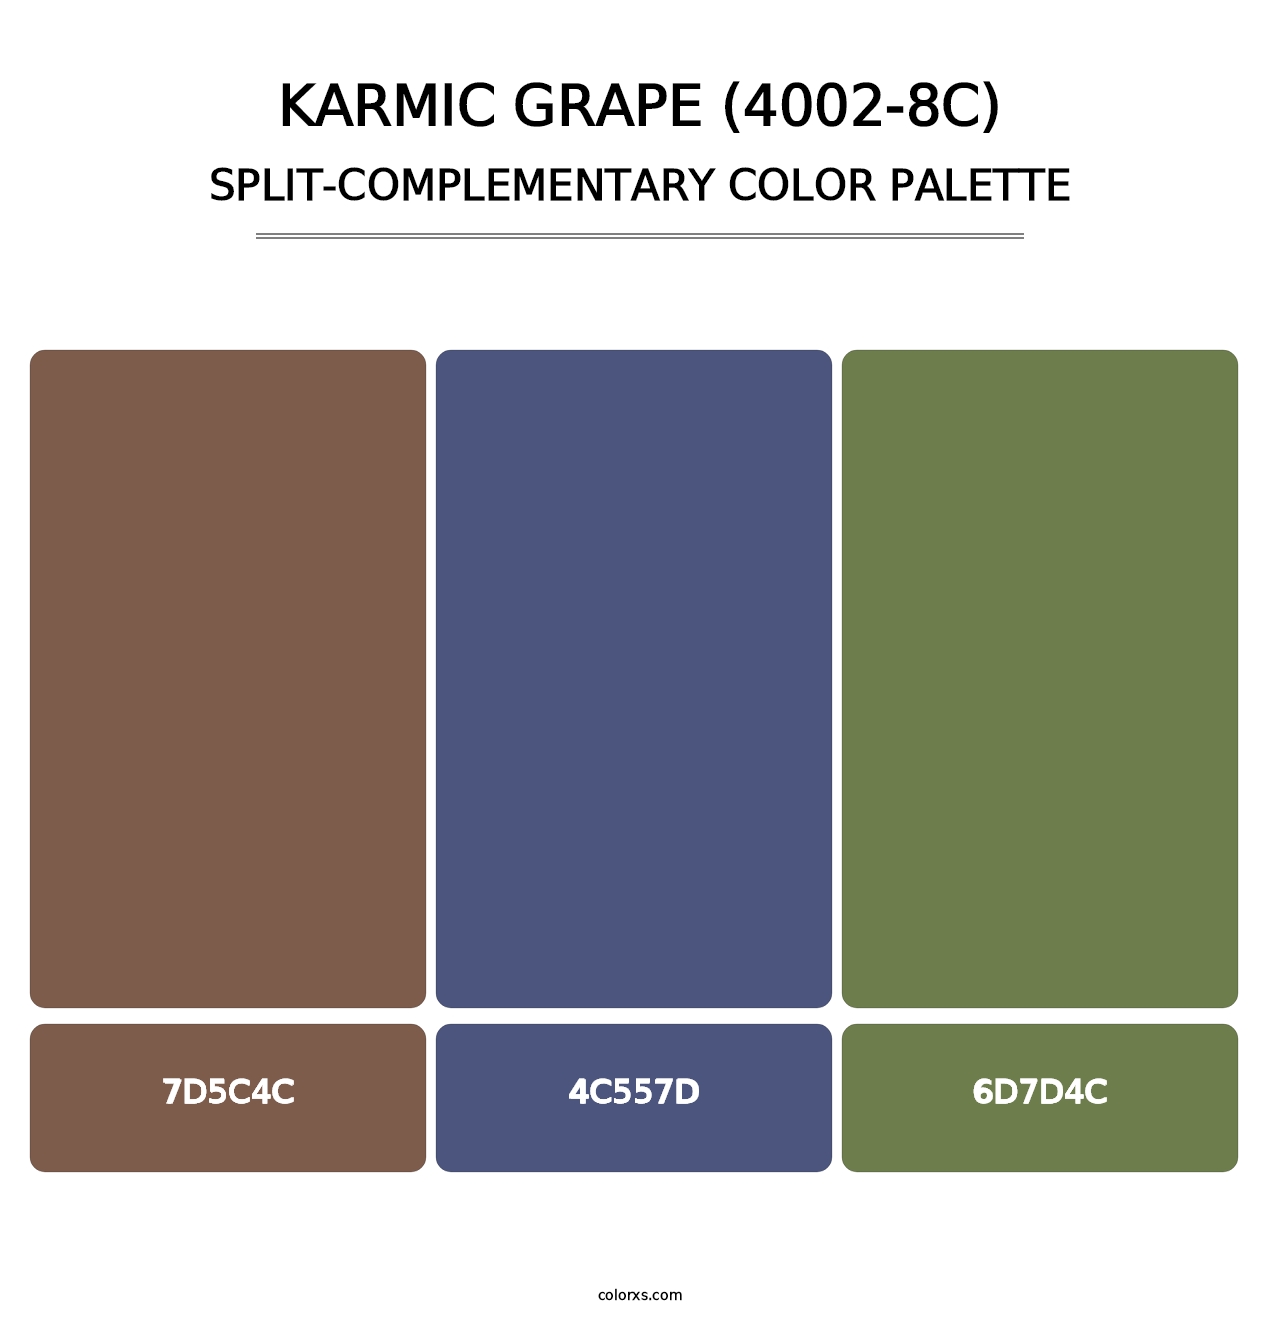 Karmic Grape (4002-8C) - Split-Complementary Color Palette